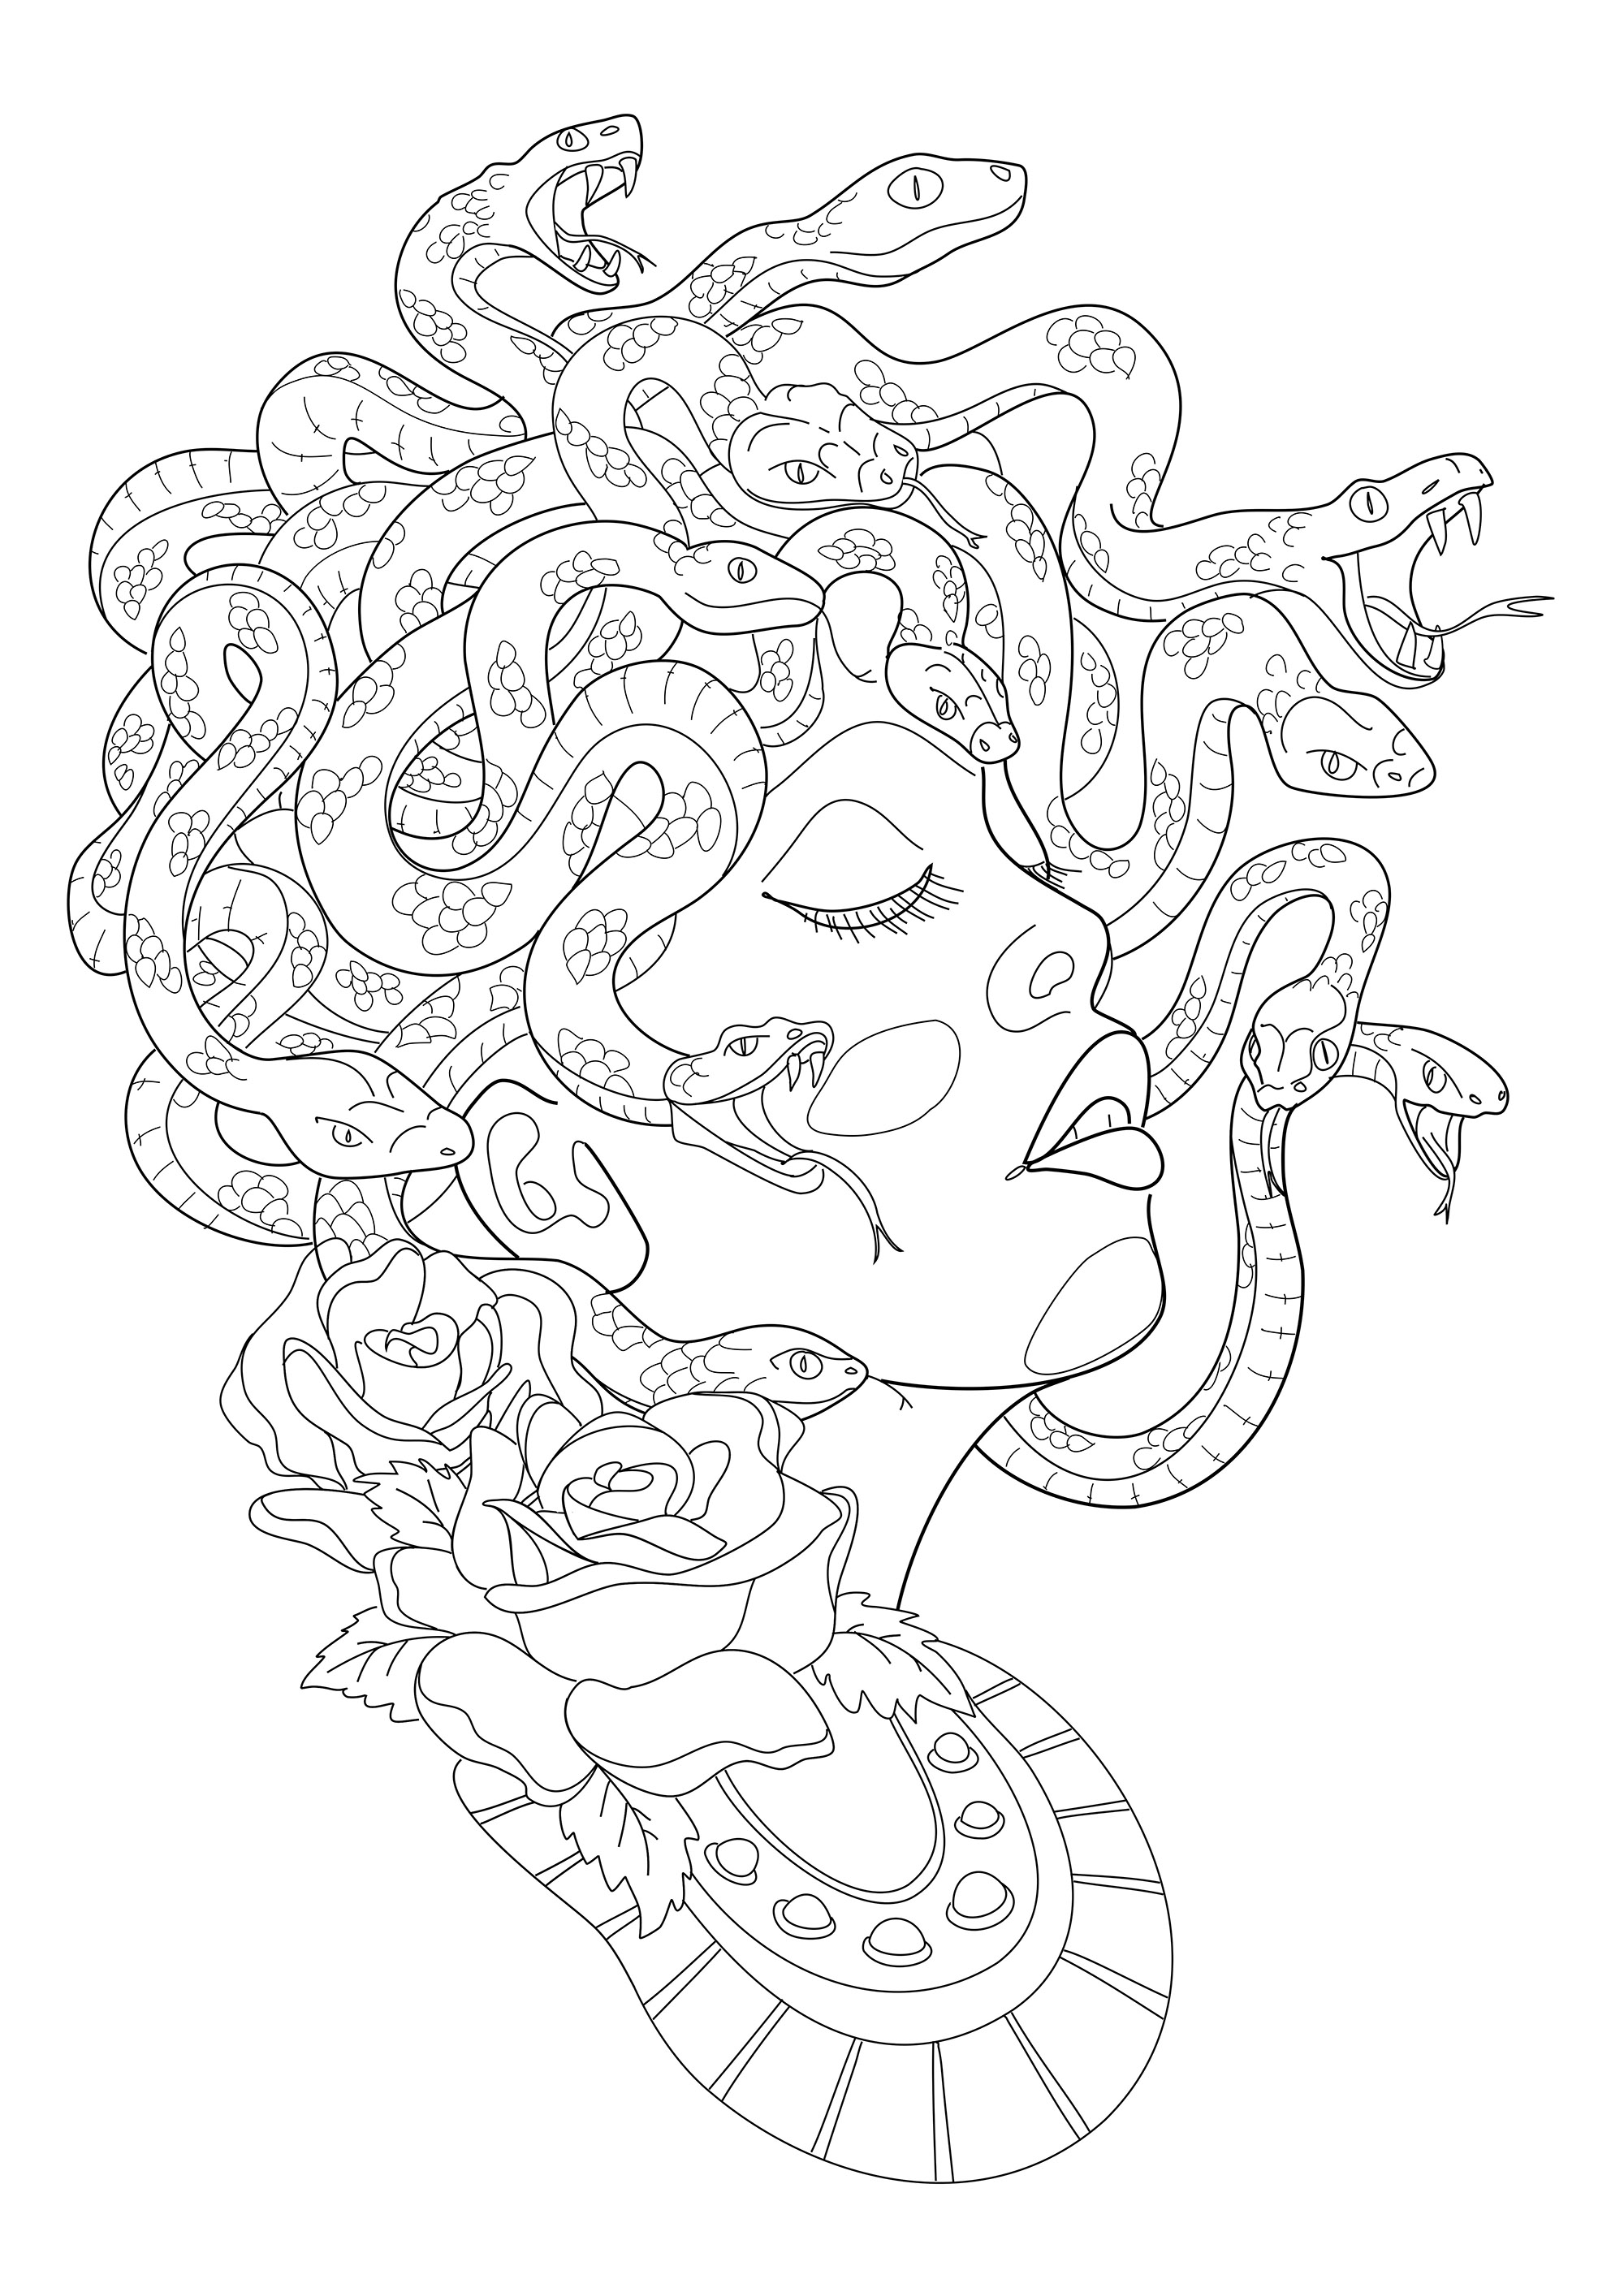 Medusa vue de profil, avec ses effrayants serpents formant sa chevelure. Extrait du livre “Realistic Tattoos Coloring Book” par Roberto “Gi